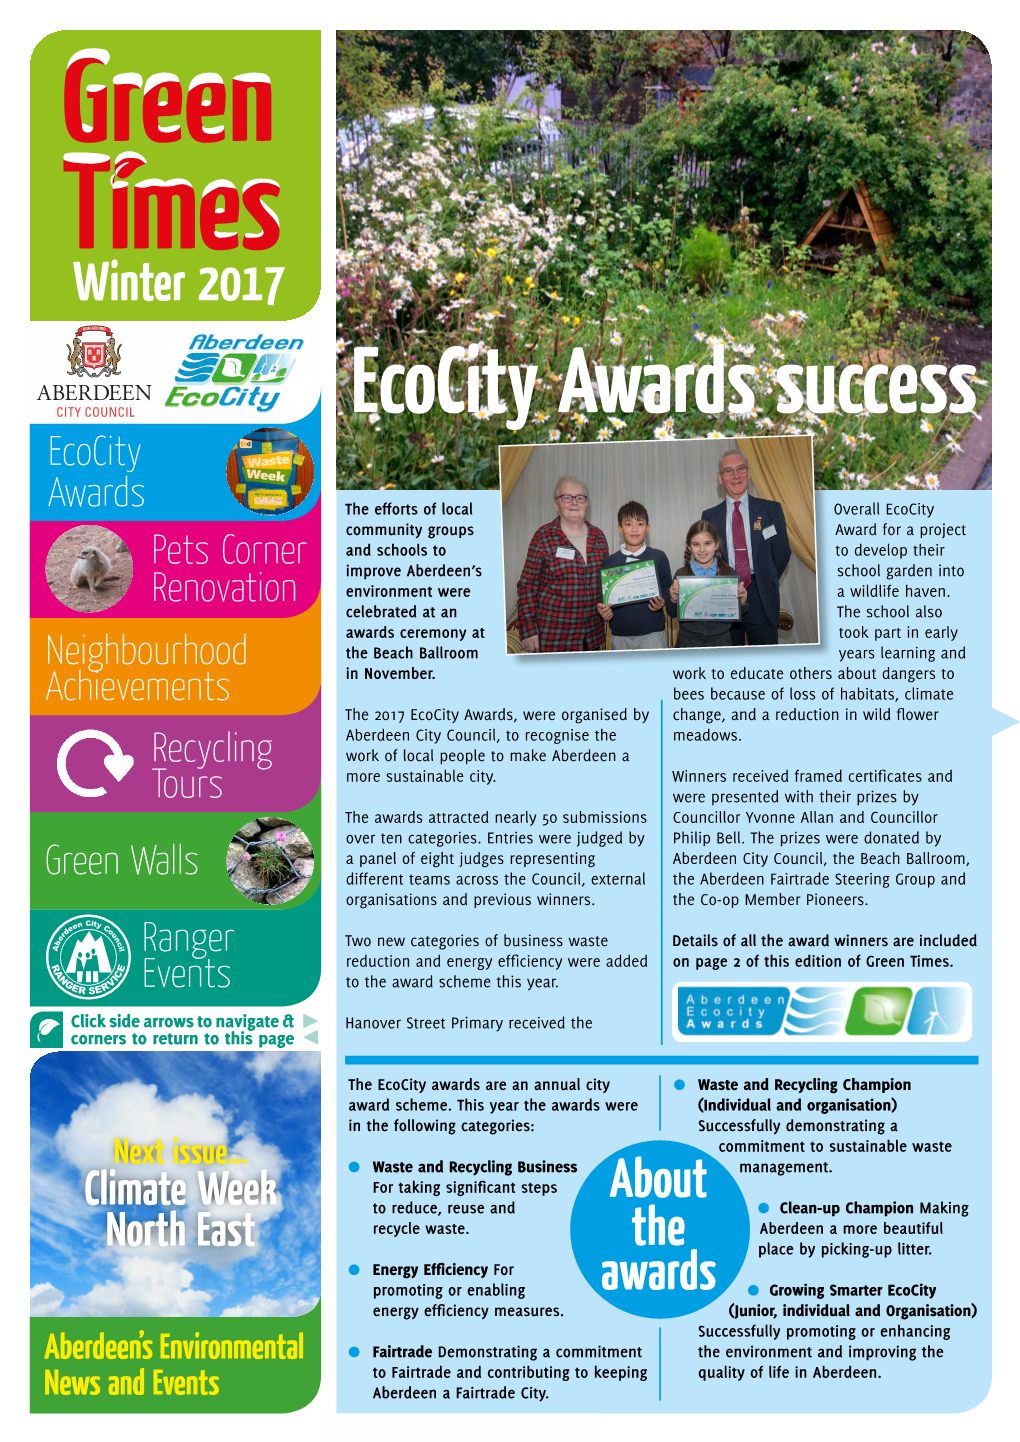 Ecocity Awards Success Ecocity